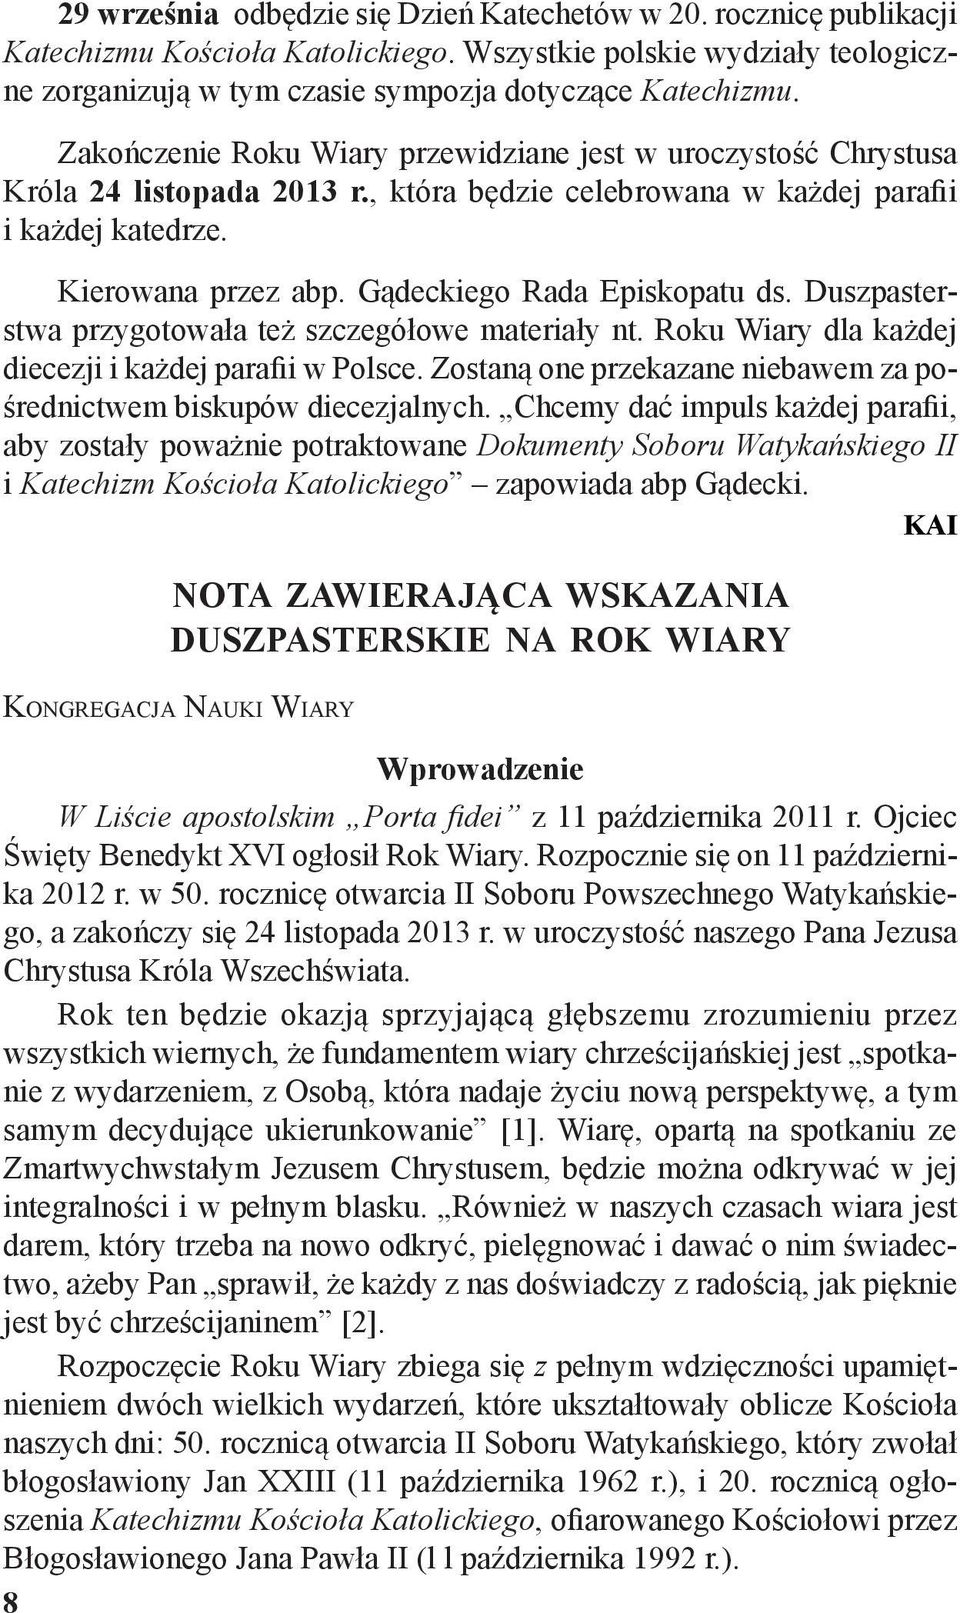 Gądeckiego Rada Episkopatu ds. Duszpasterstwa przygotowała też szczegółowe materiały nt. Roku Wiary dla każdej diecezji i każdej parafii w Polsce.